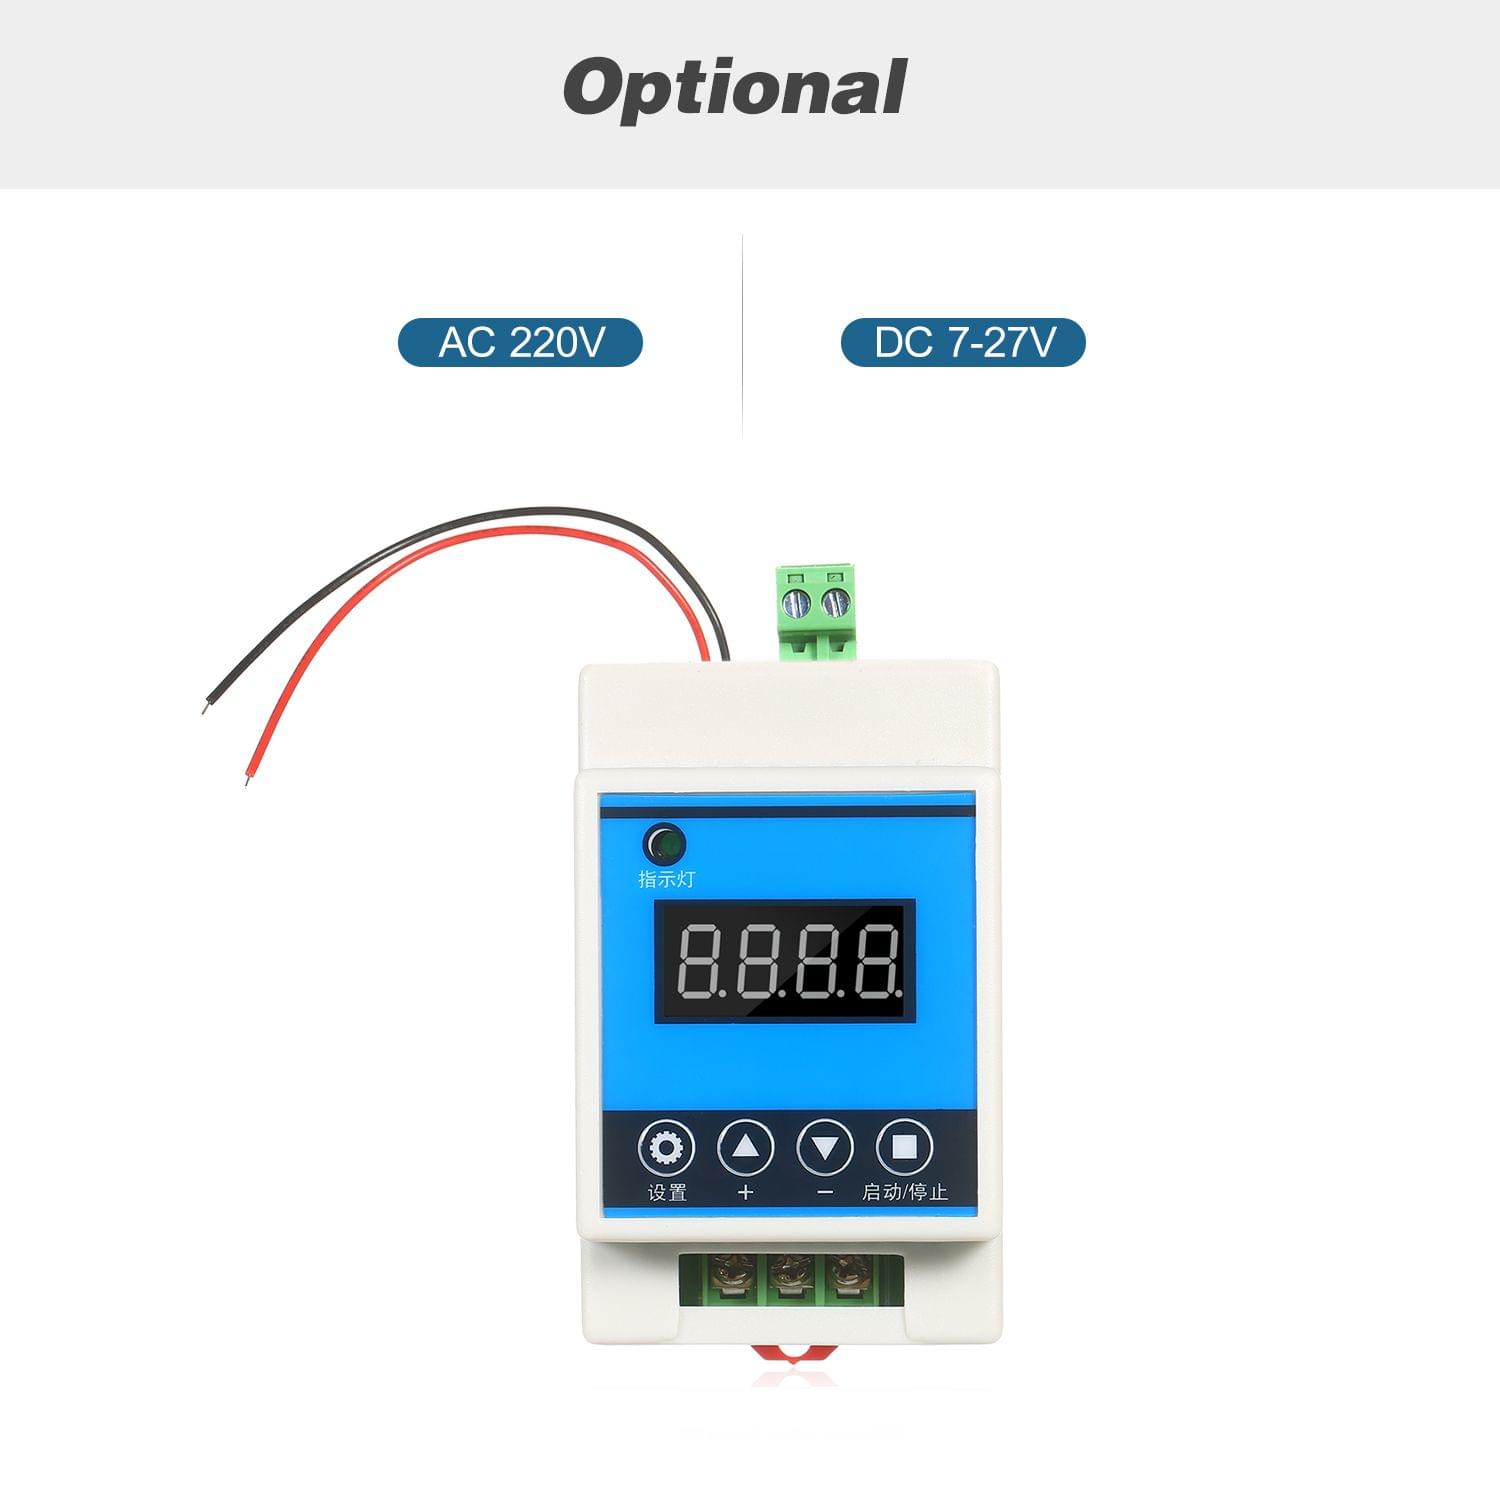 AC 220V Digital Delay Timer Control Switch Relay Module with - AC 220V